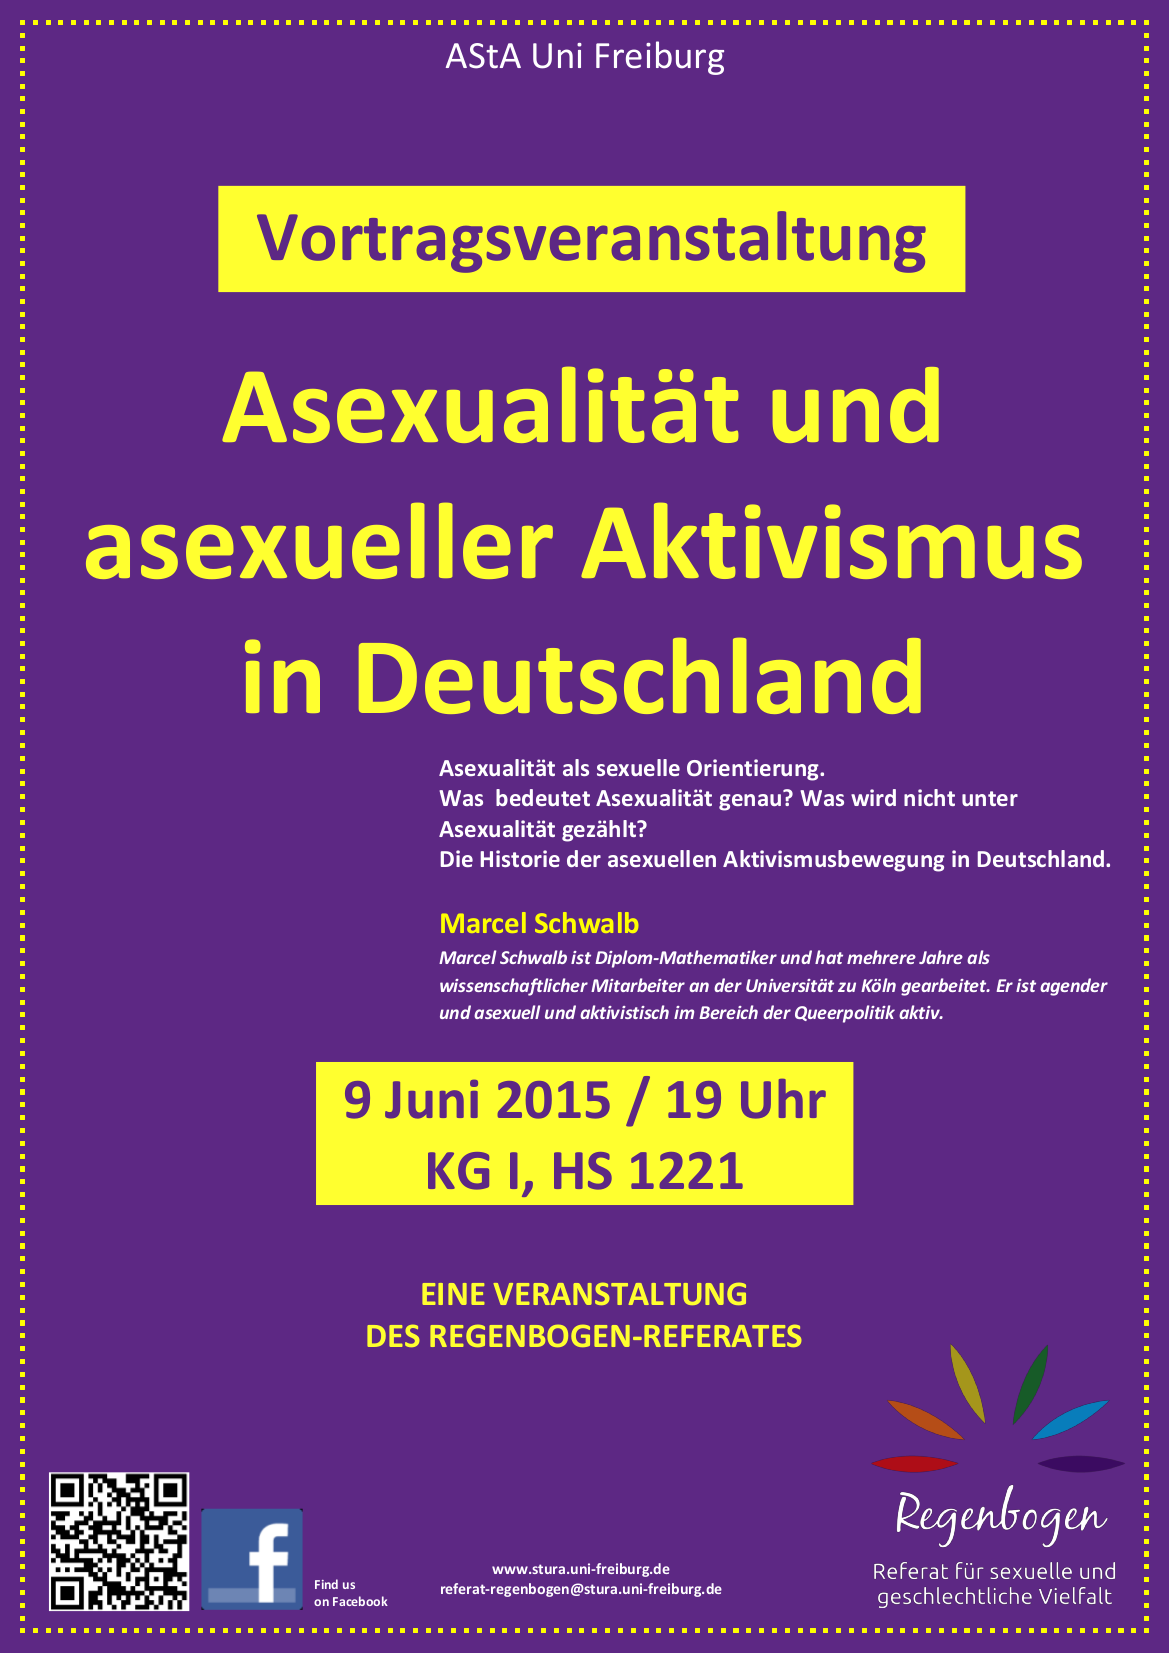 Plakat Asexualität und Asexueller Aktivismus